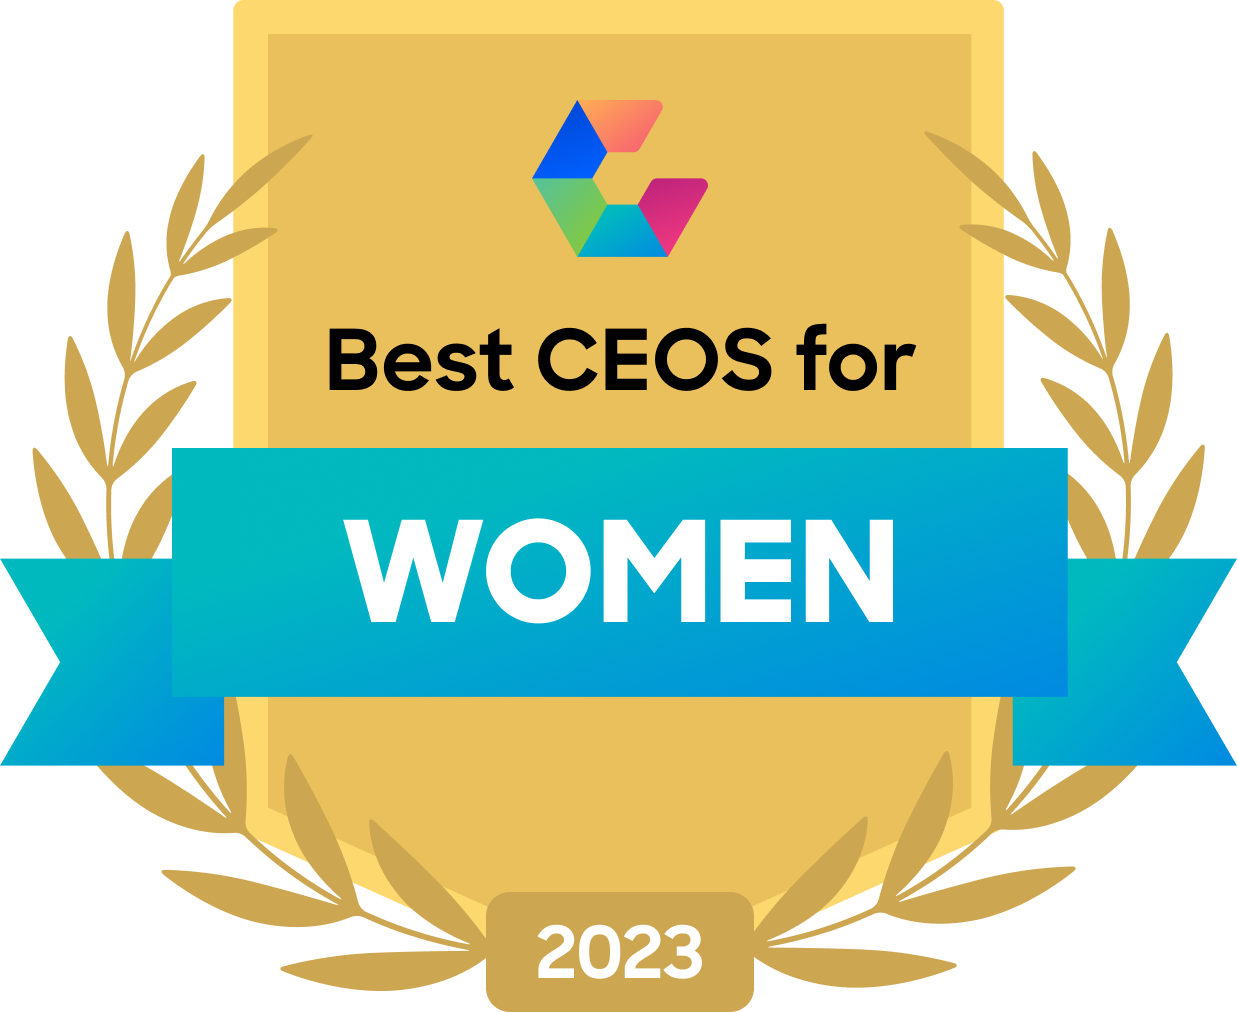 Best CEOs for Women 2023